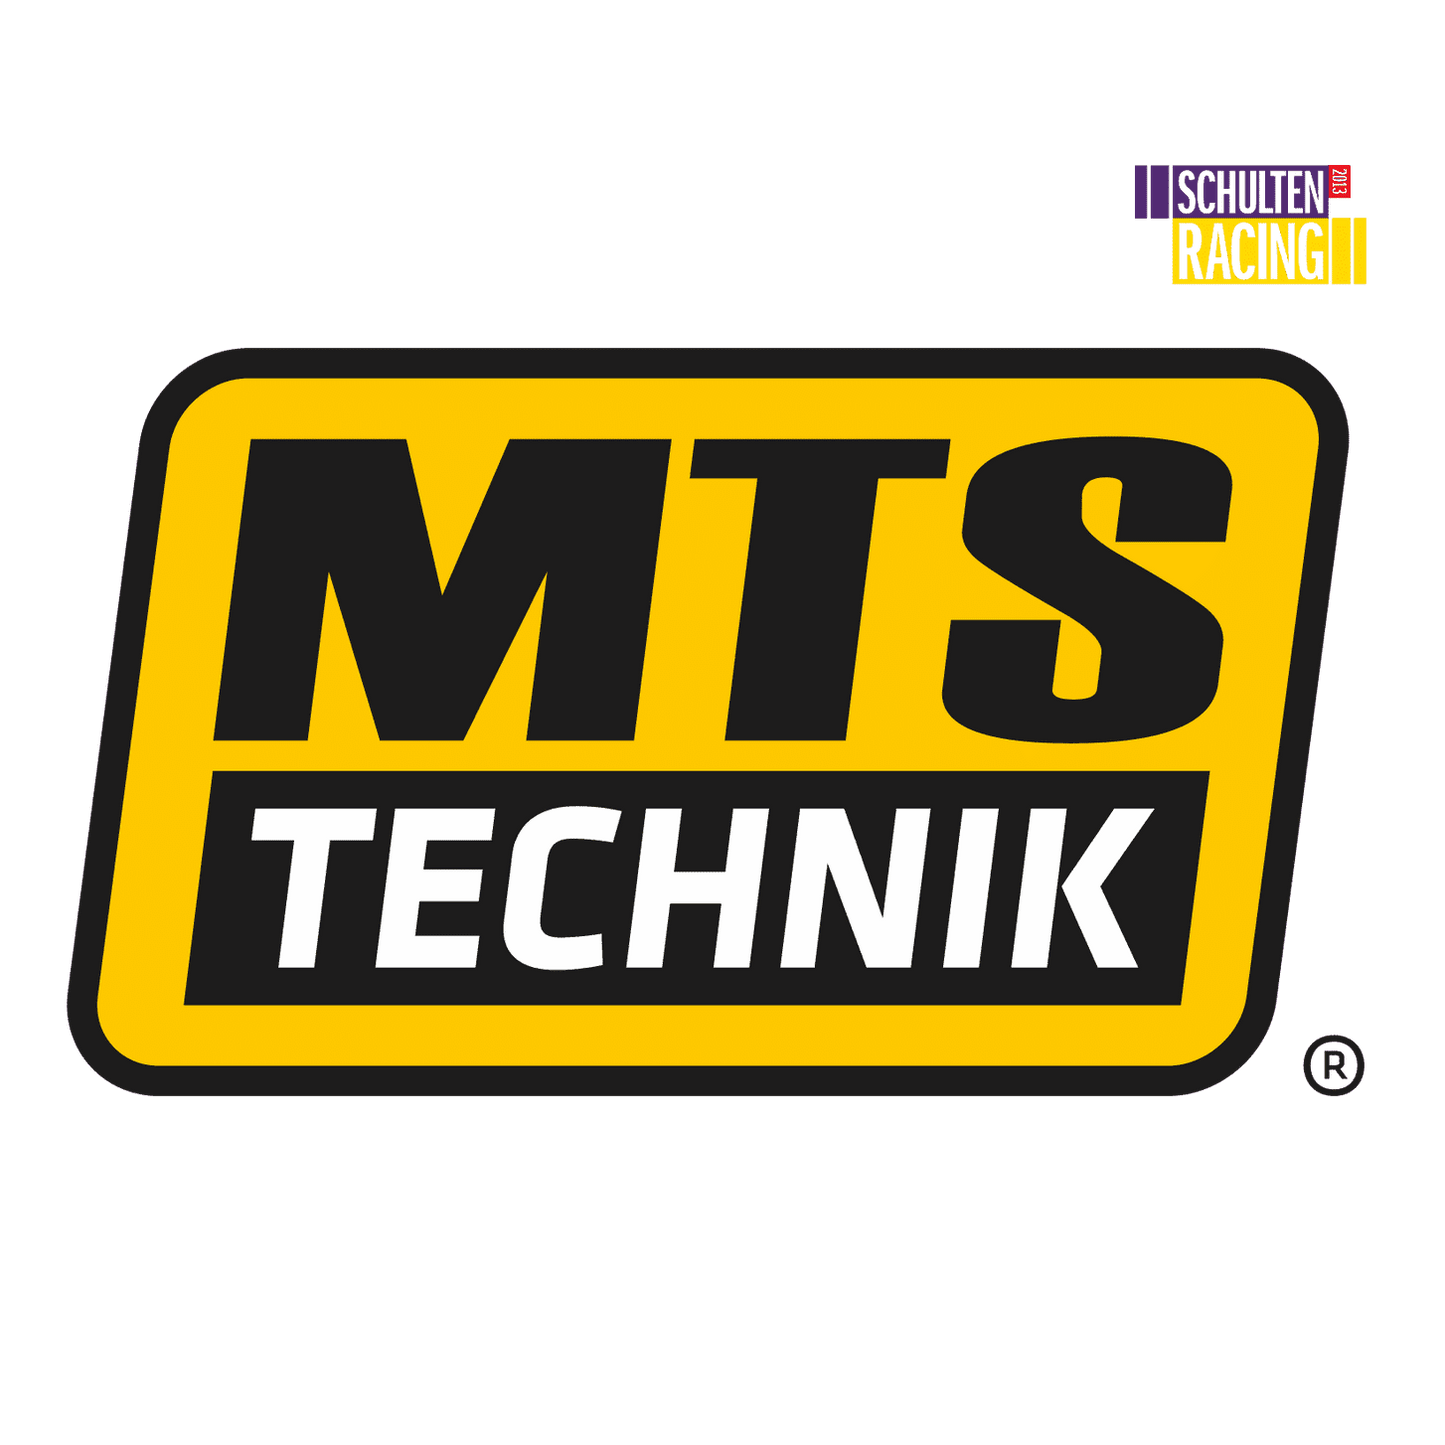 MTS TECHNIK Rijhoogte Verstellers achter - Premium Voertuigonderdelen en -accessoires Van MTS TECHNIK - Voor €59.00! Shop nu bij Schulten Racing Parts